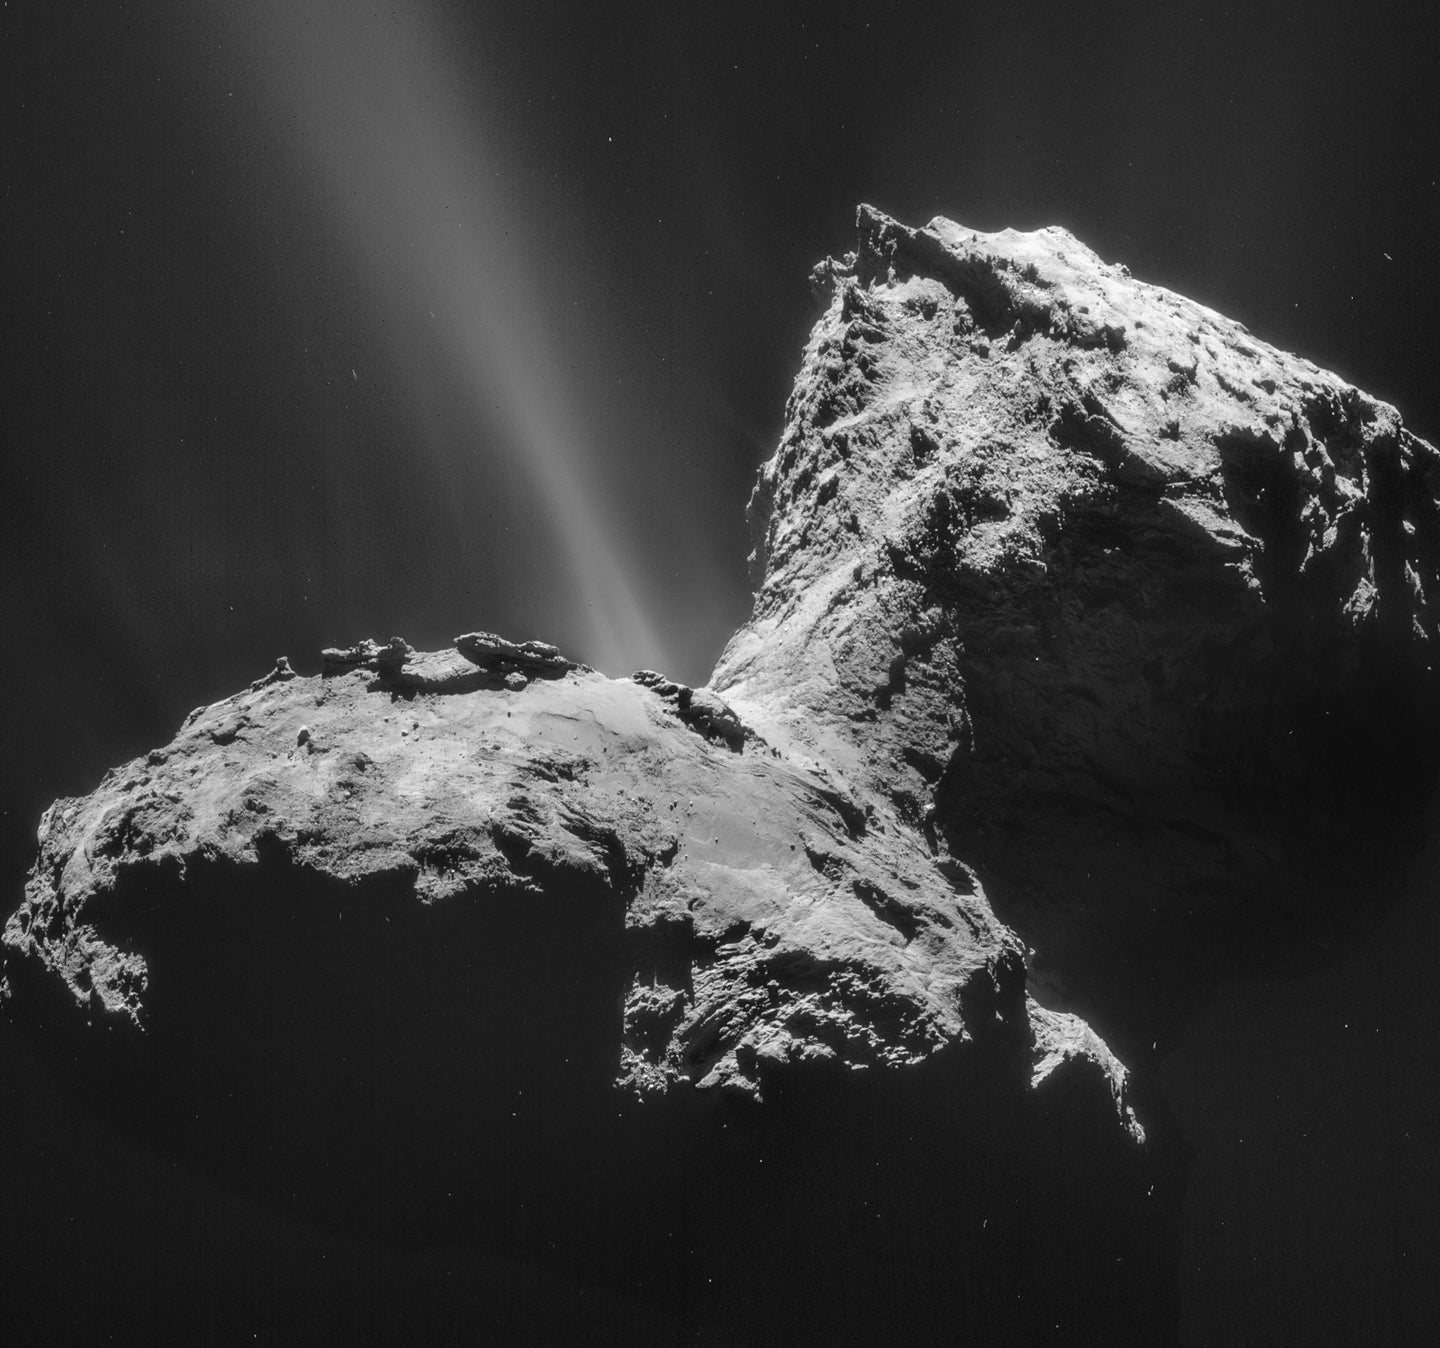 Image of Comet 67P/Churyumov-Gerasimenko was taken on January 31, 2015.